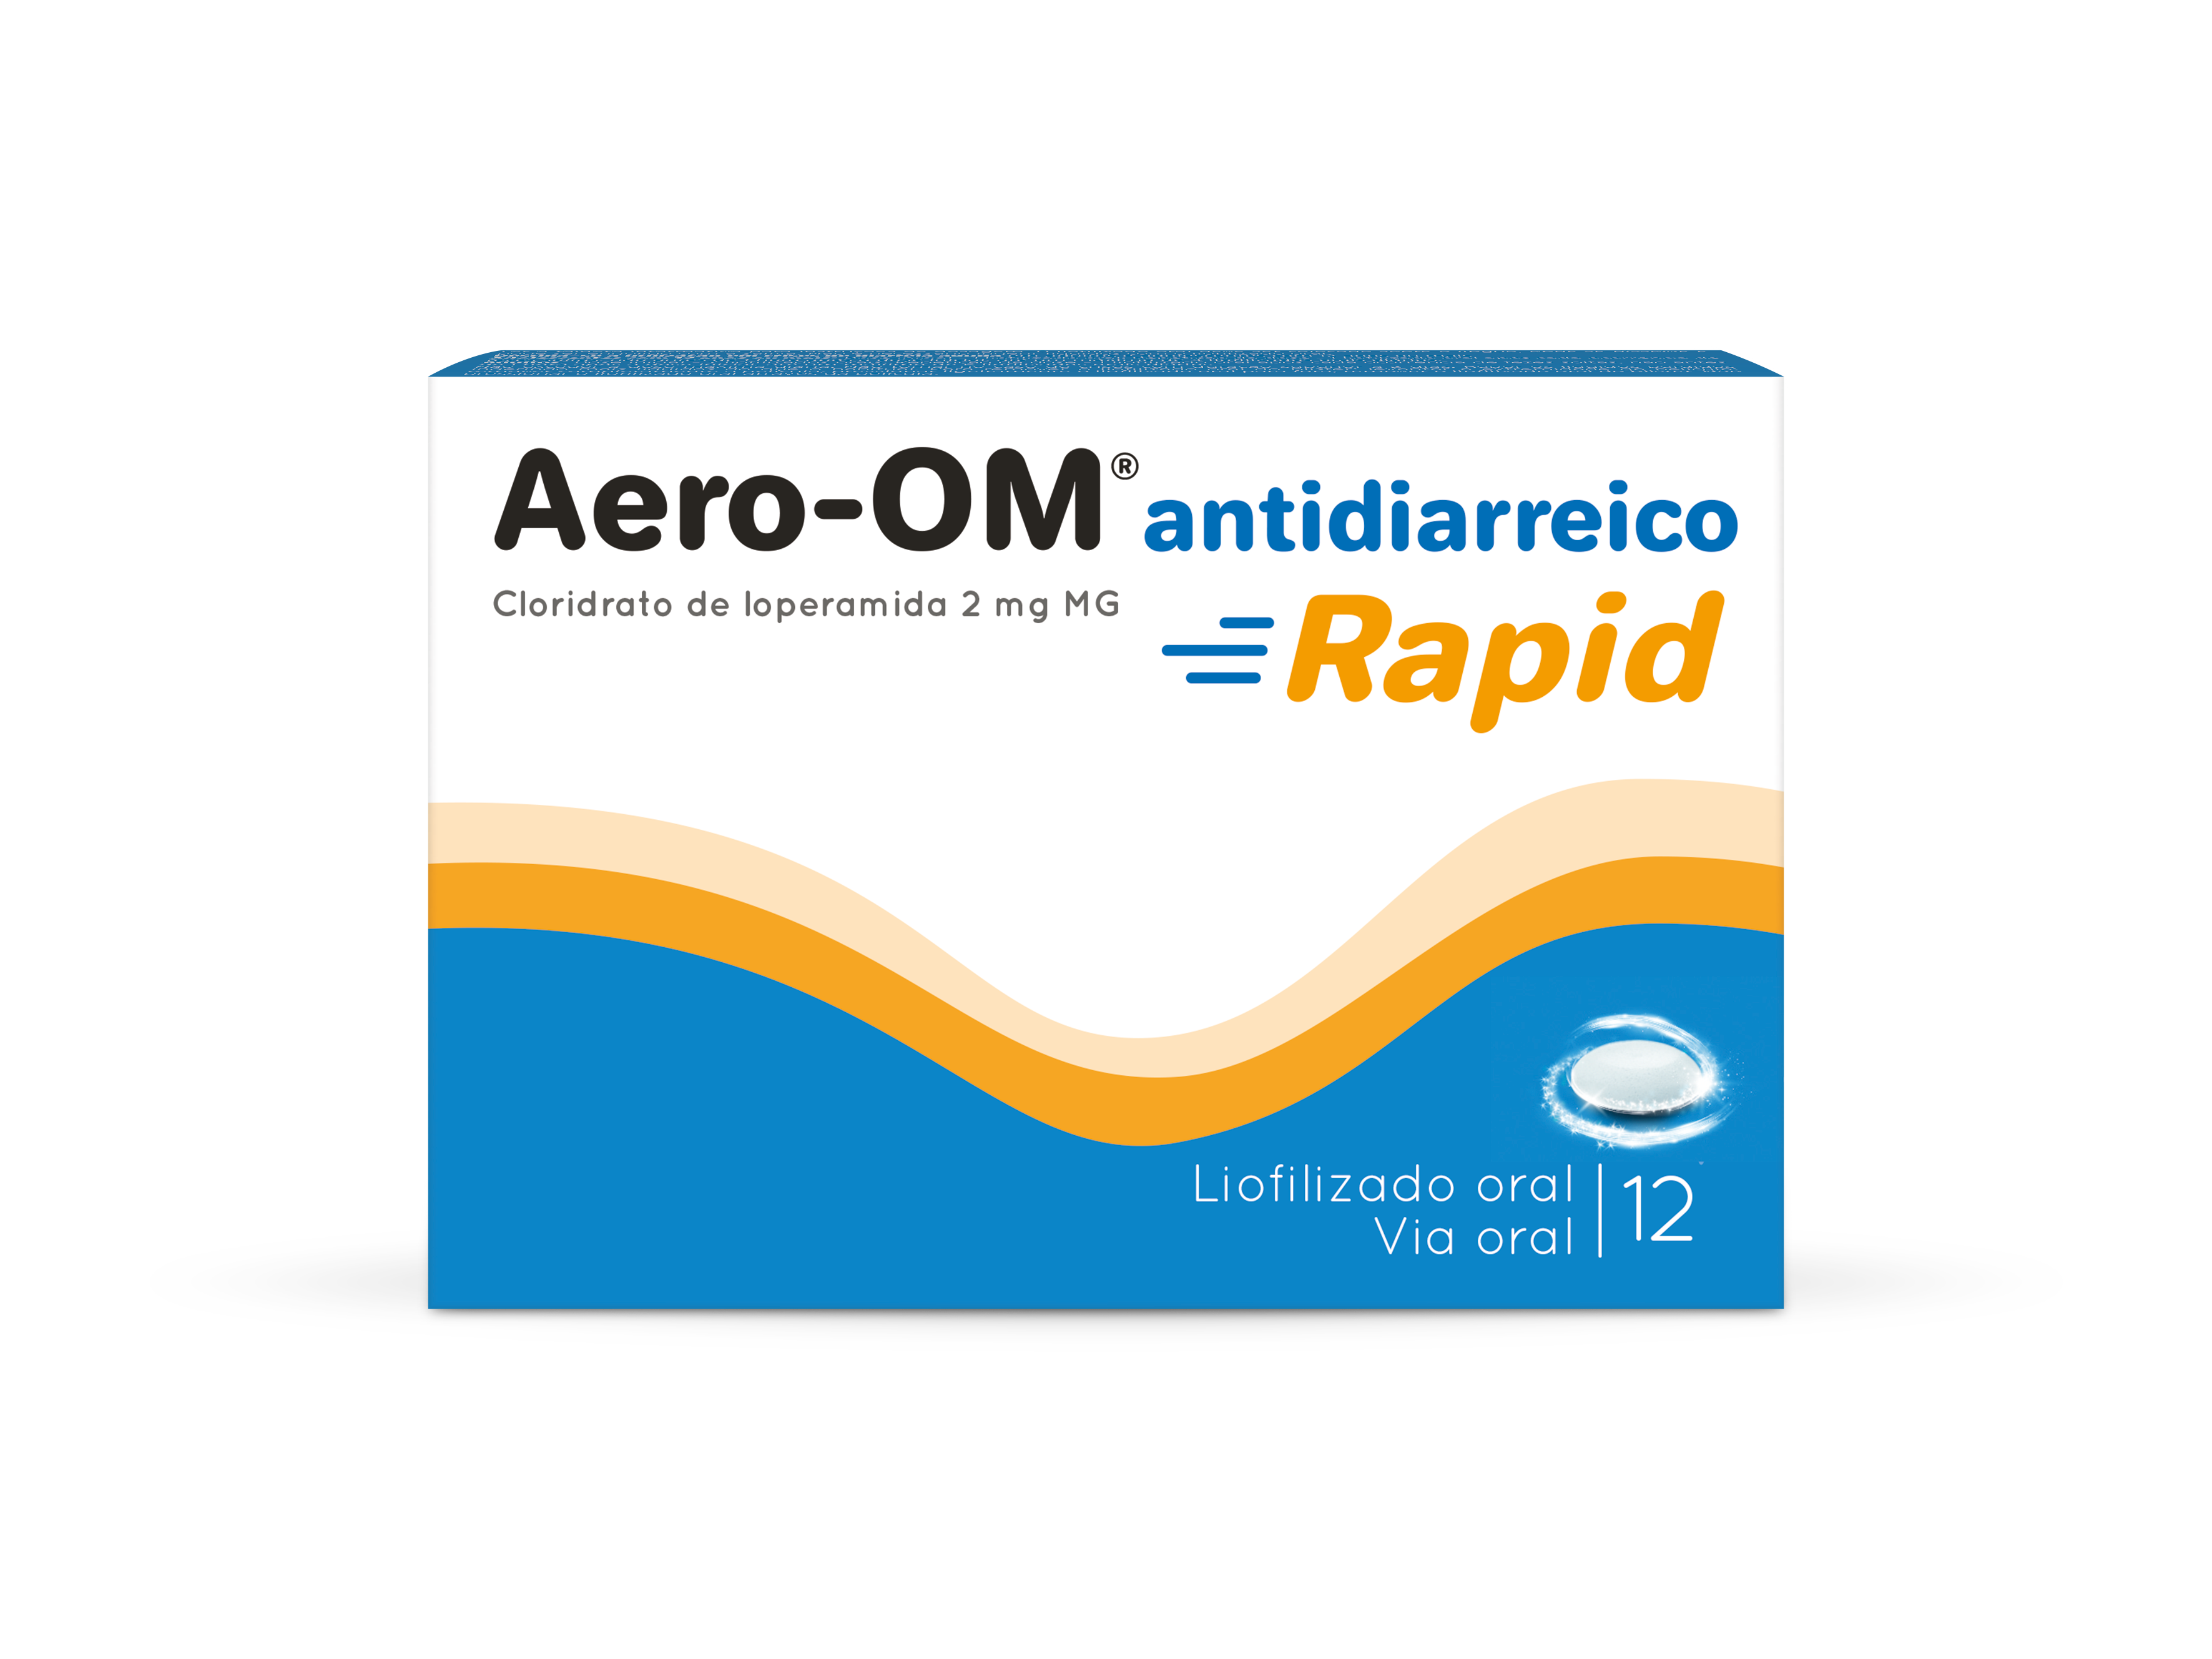 Aero-OM® antidiarreico Rapid